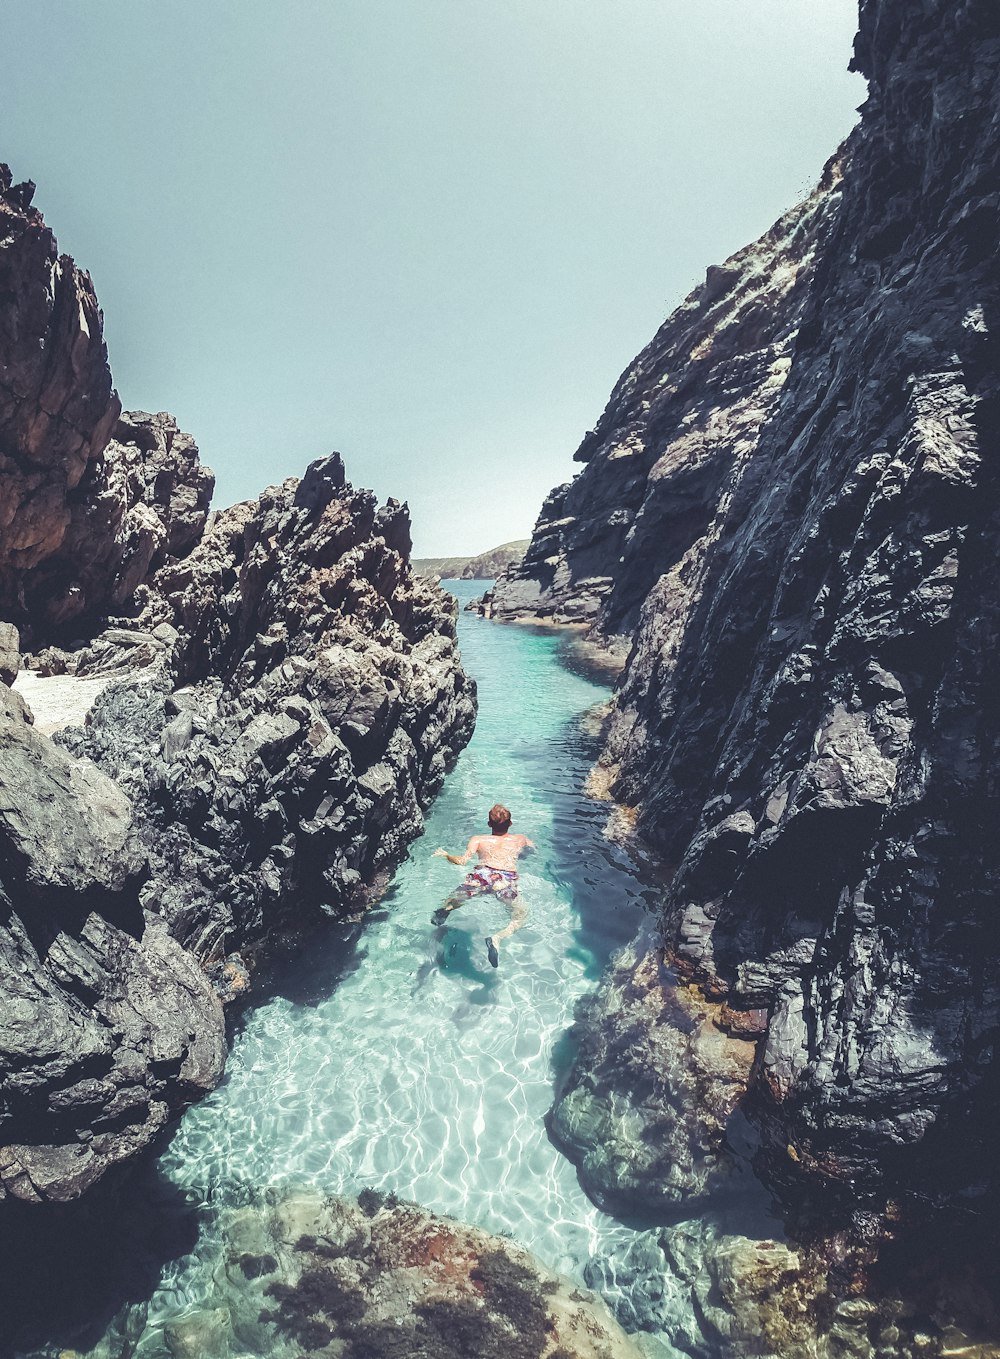 uma pessoa nadando em um corpo de água cercado por rochas